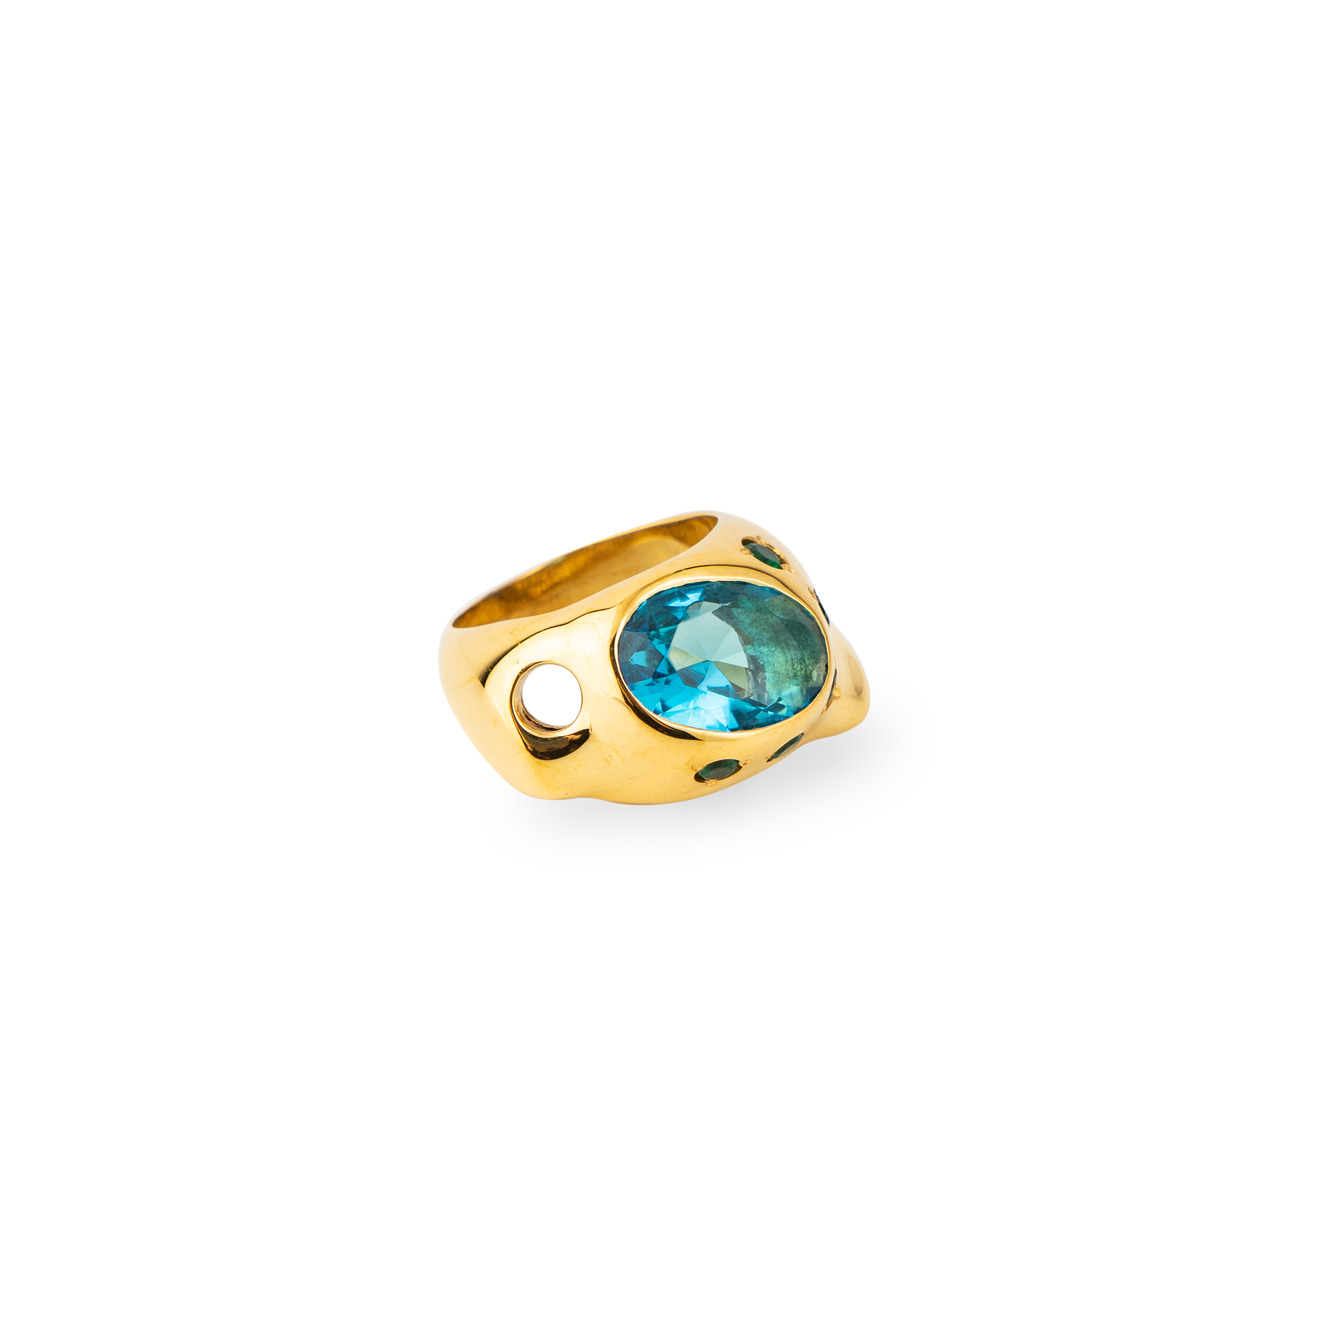 Janashia Золотистое кольцо Ava волнообразной формы со вставками из зеленых и голубого кристалла janashia объемное позолоченное кольцо с жемчугом